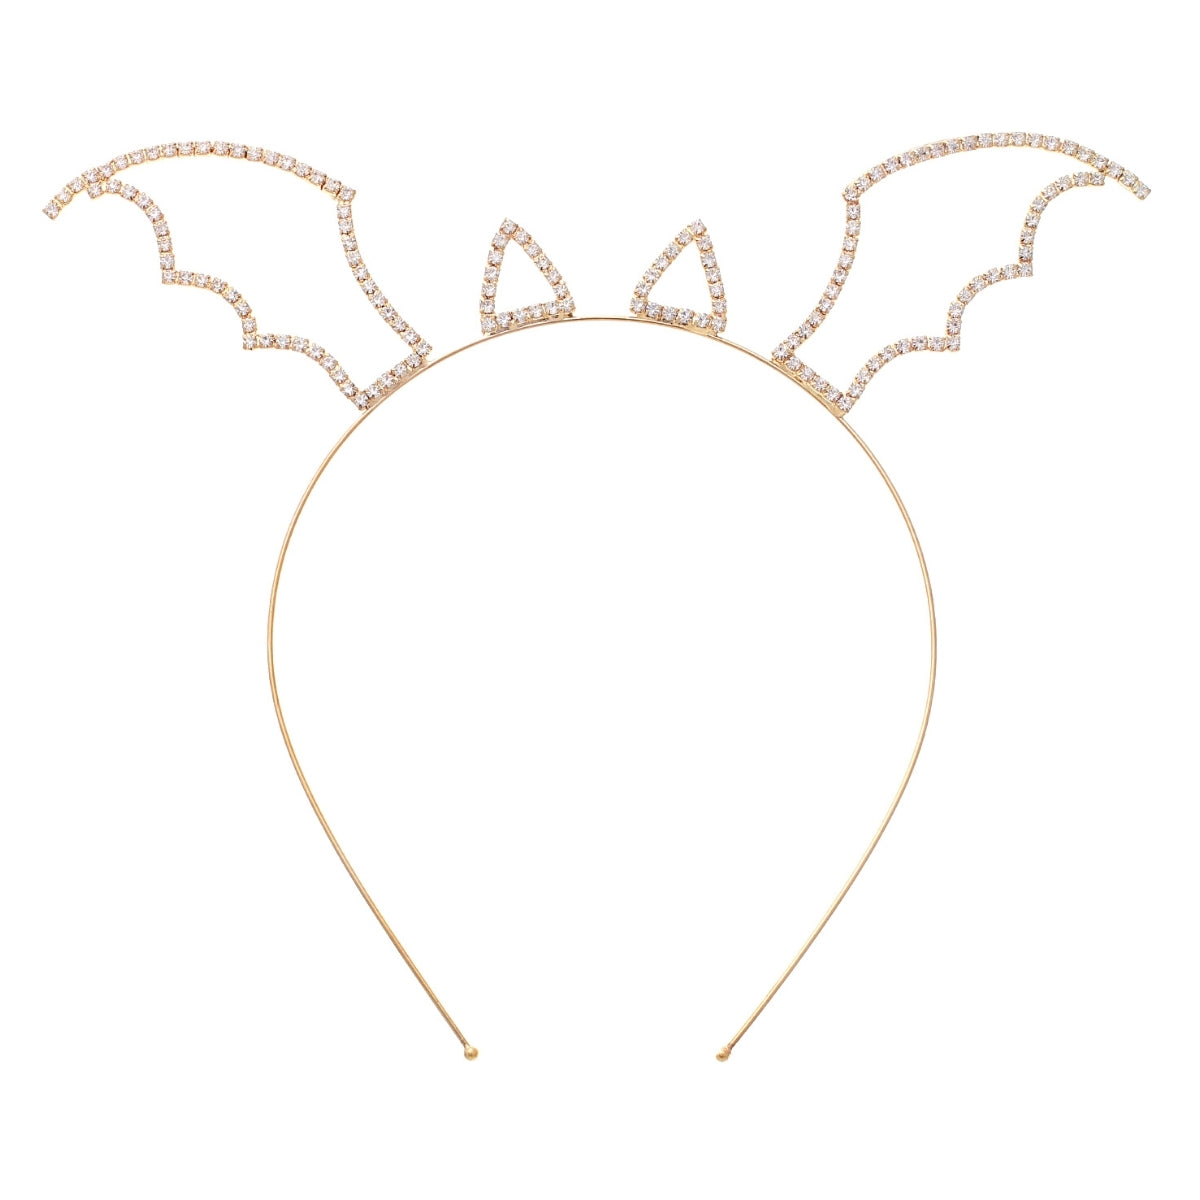 Gold Bat Ear Wings Headband